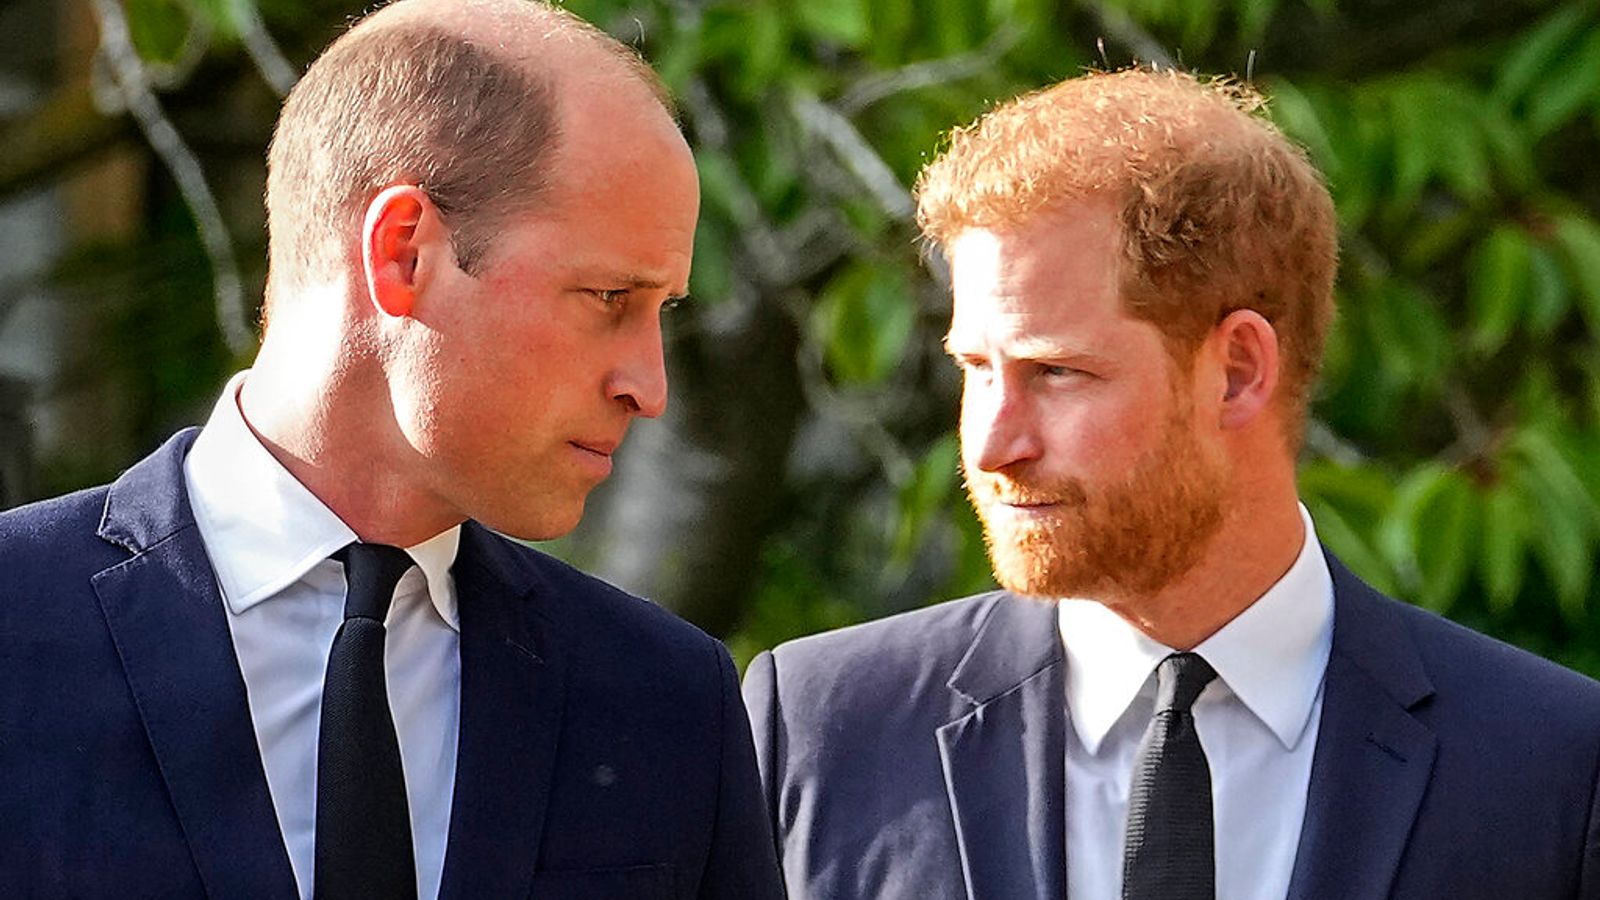 Le prince Harry « surpris » lorsque la famille royale a autorisé le retrait de sa sécurité – et dit que la reine « est triste mais pas surprise » lorsqu’ils ont reculé |  Nouvelles du Royaume-Uni